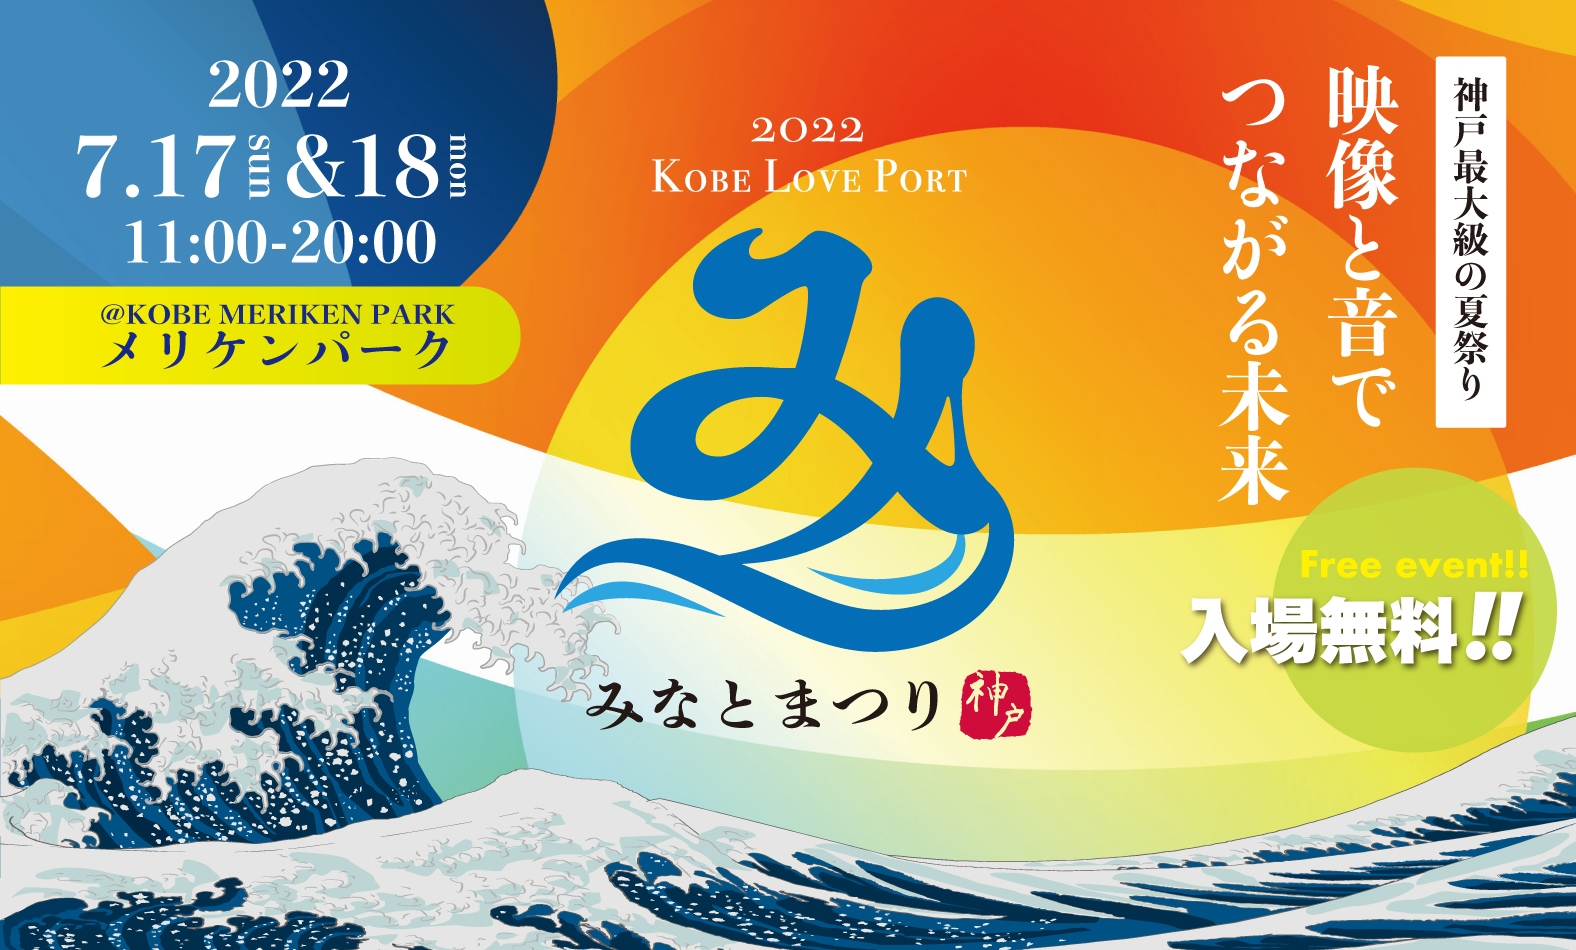 第21回 Kobe Love Port・みなとまつり開催のお知らせ